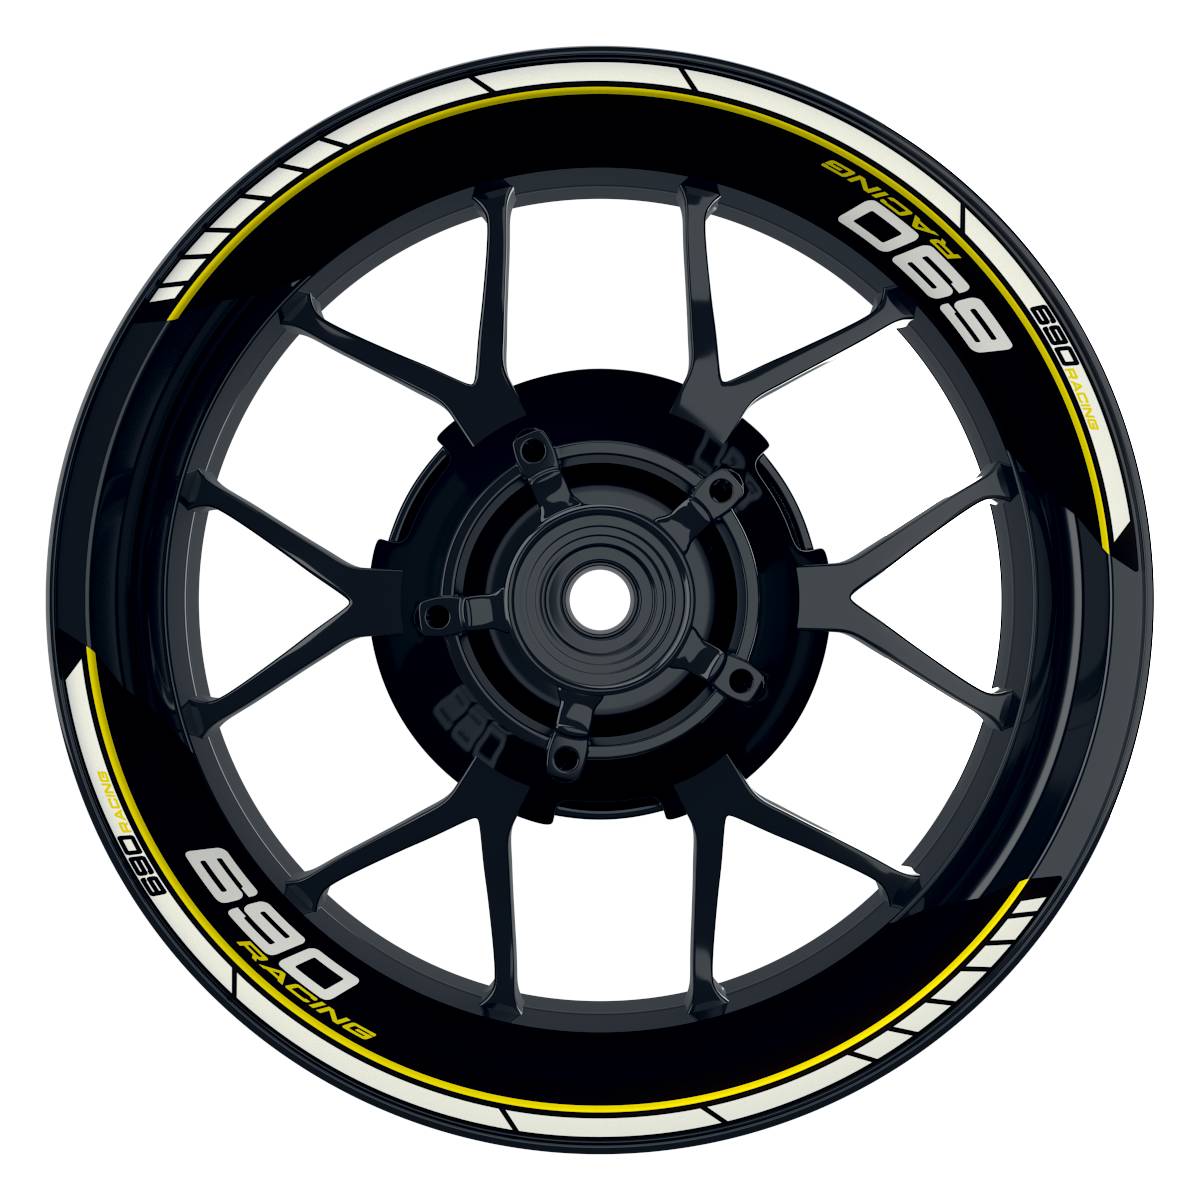 KTM Racing 690 Clean schwarz gelb Frontansicht